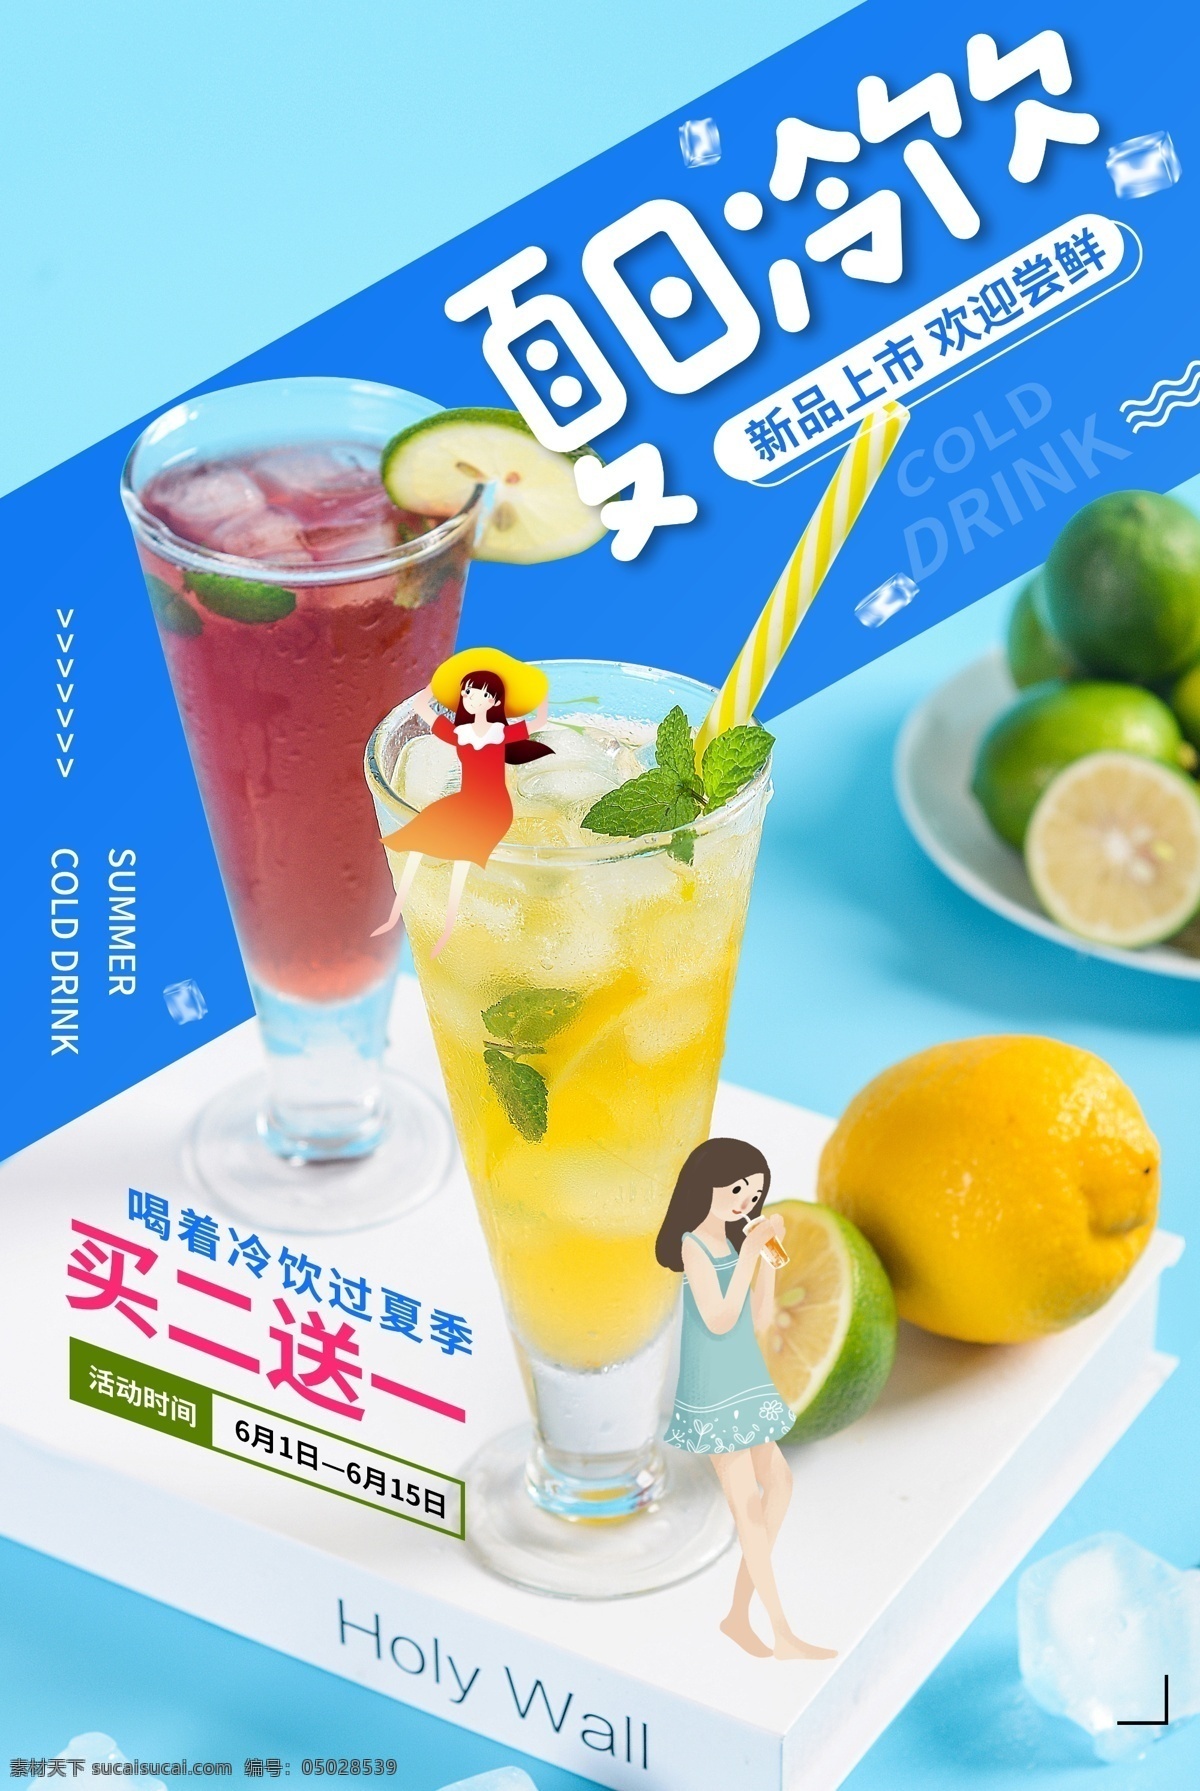 夏日 冷饮 饮品 活动 宣传海报 夏日冷饮 宣传 海报 饮料 甜品 类